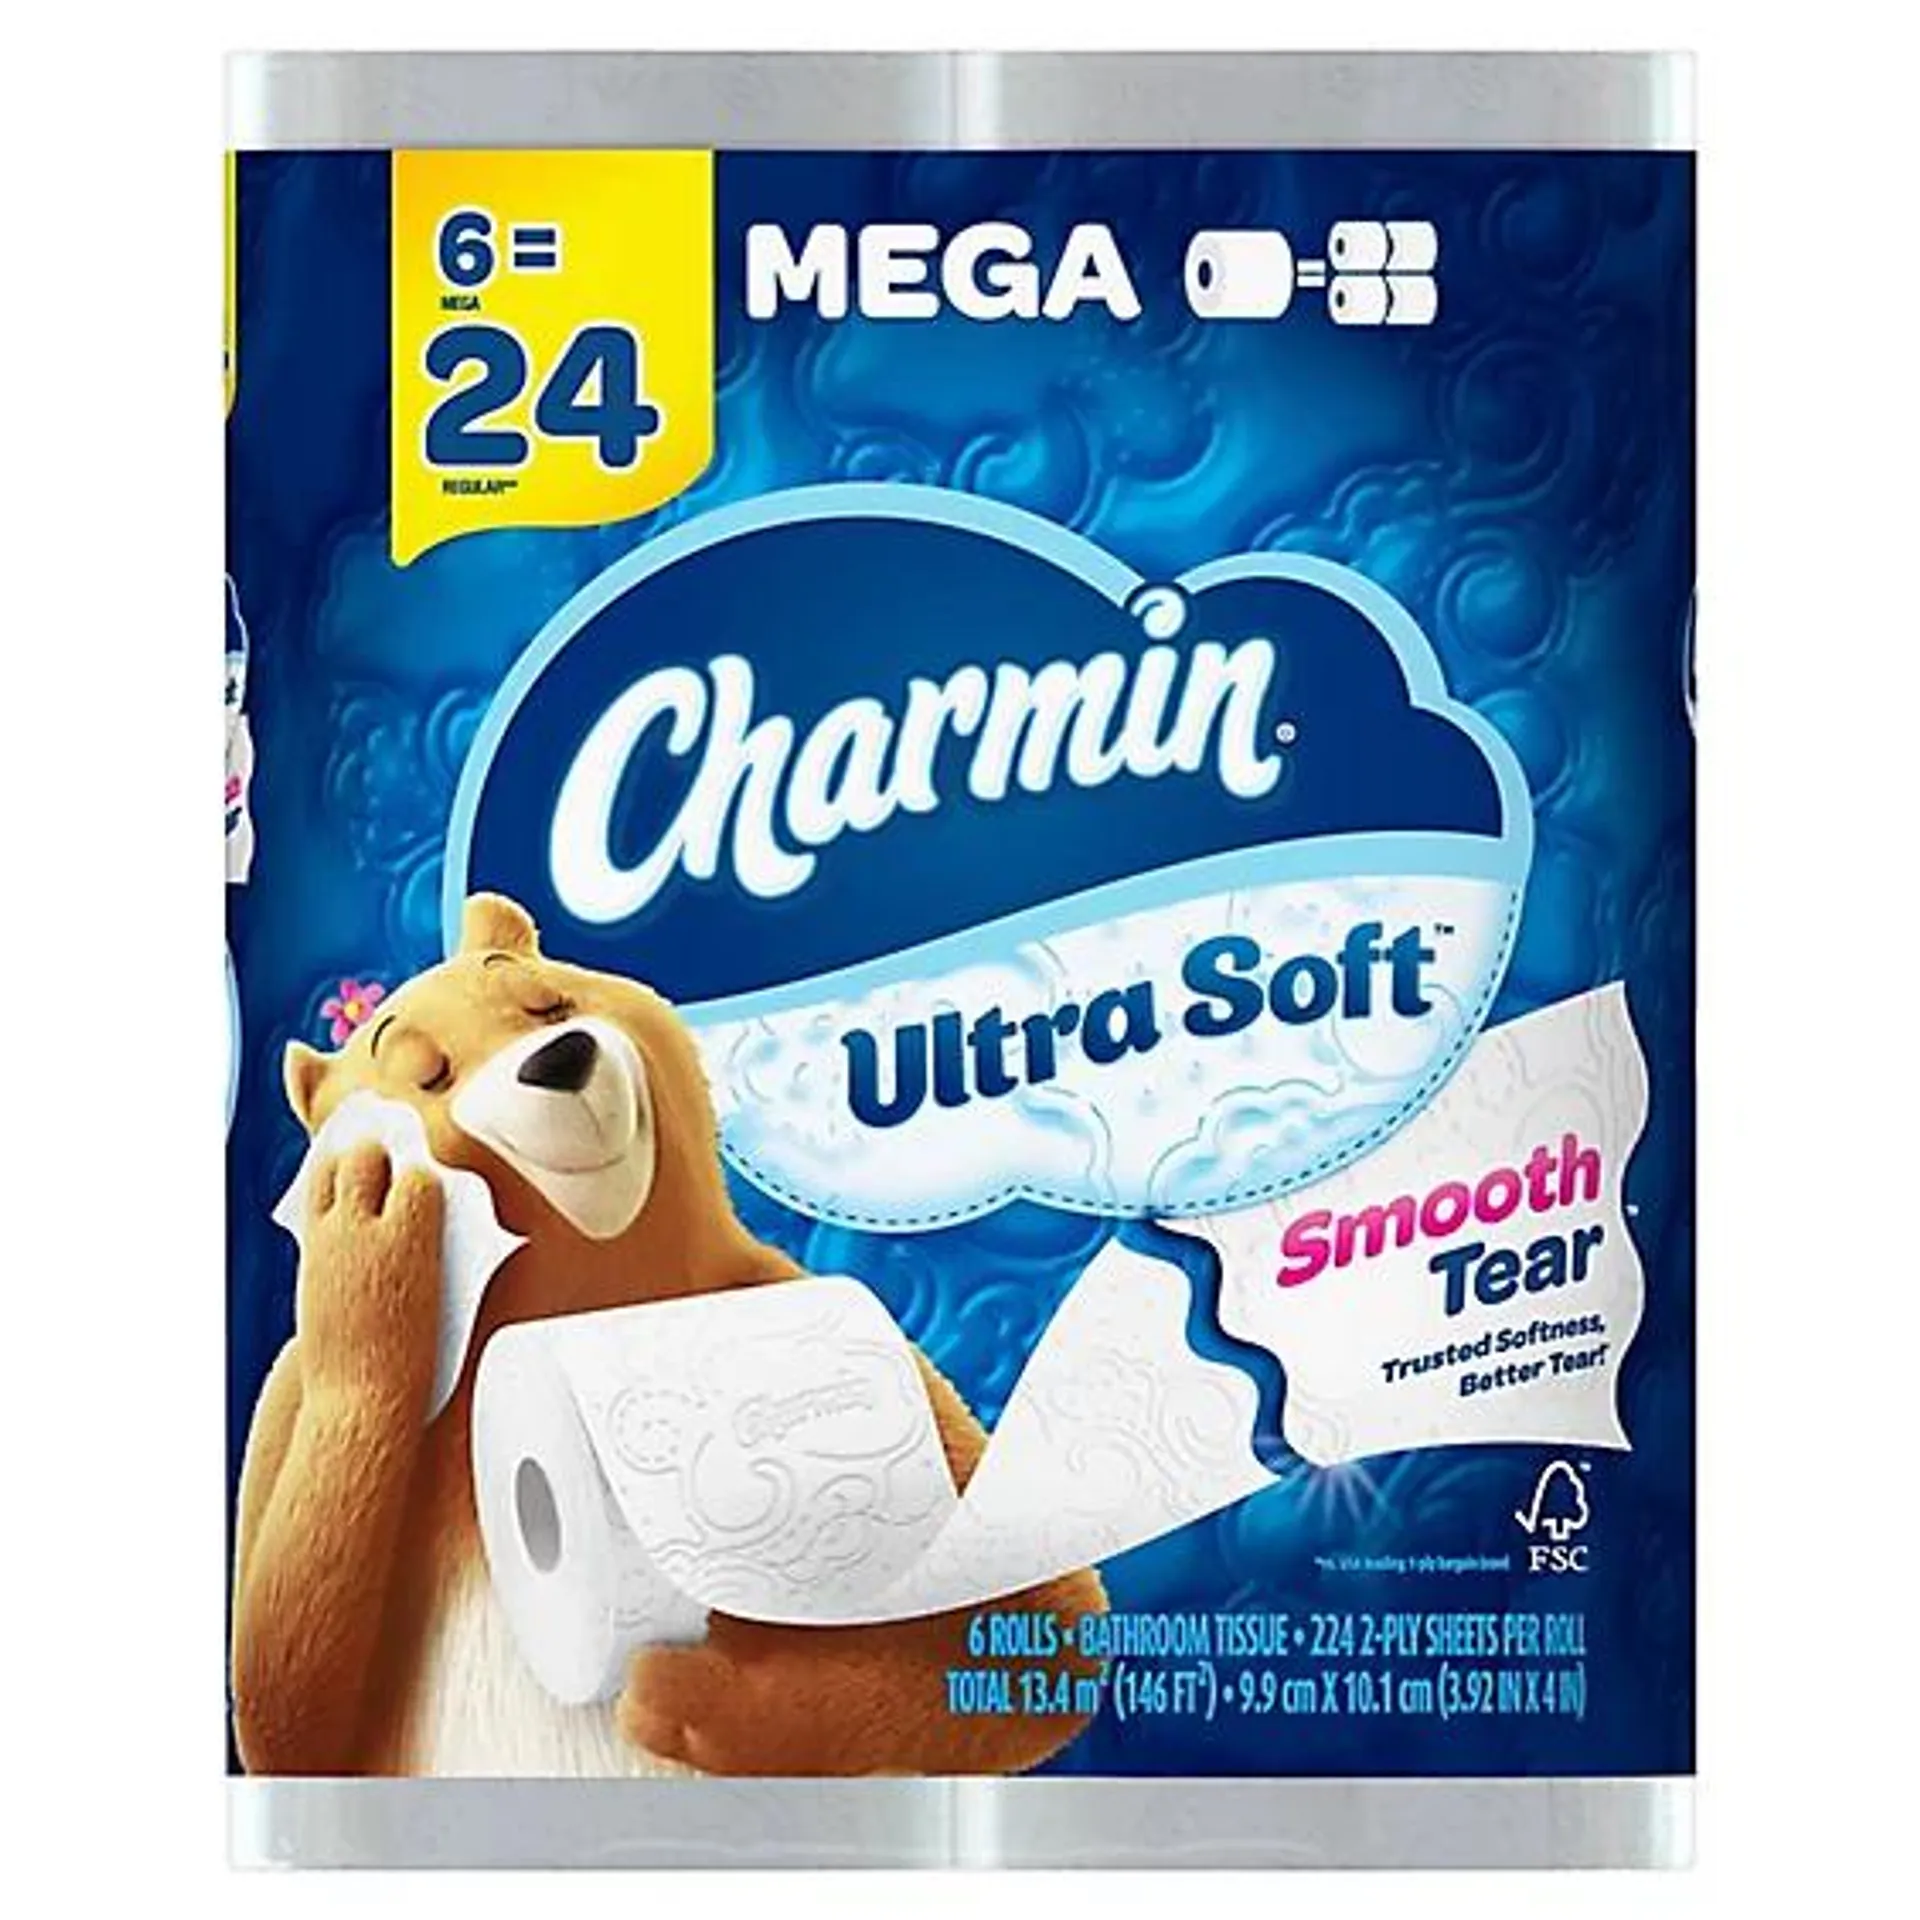 Charmin Ultra Soft Bathroom Tissue Mega Rolls 2 Ply - 6 Roll